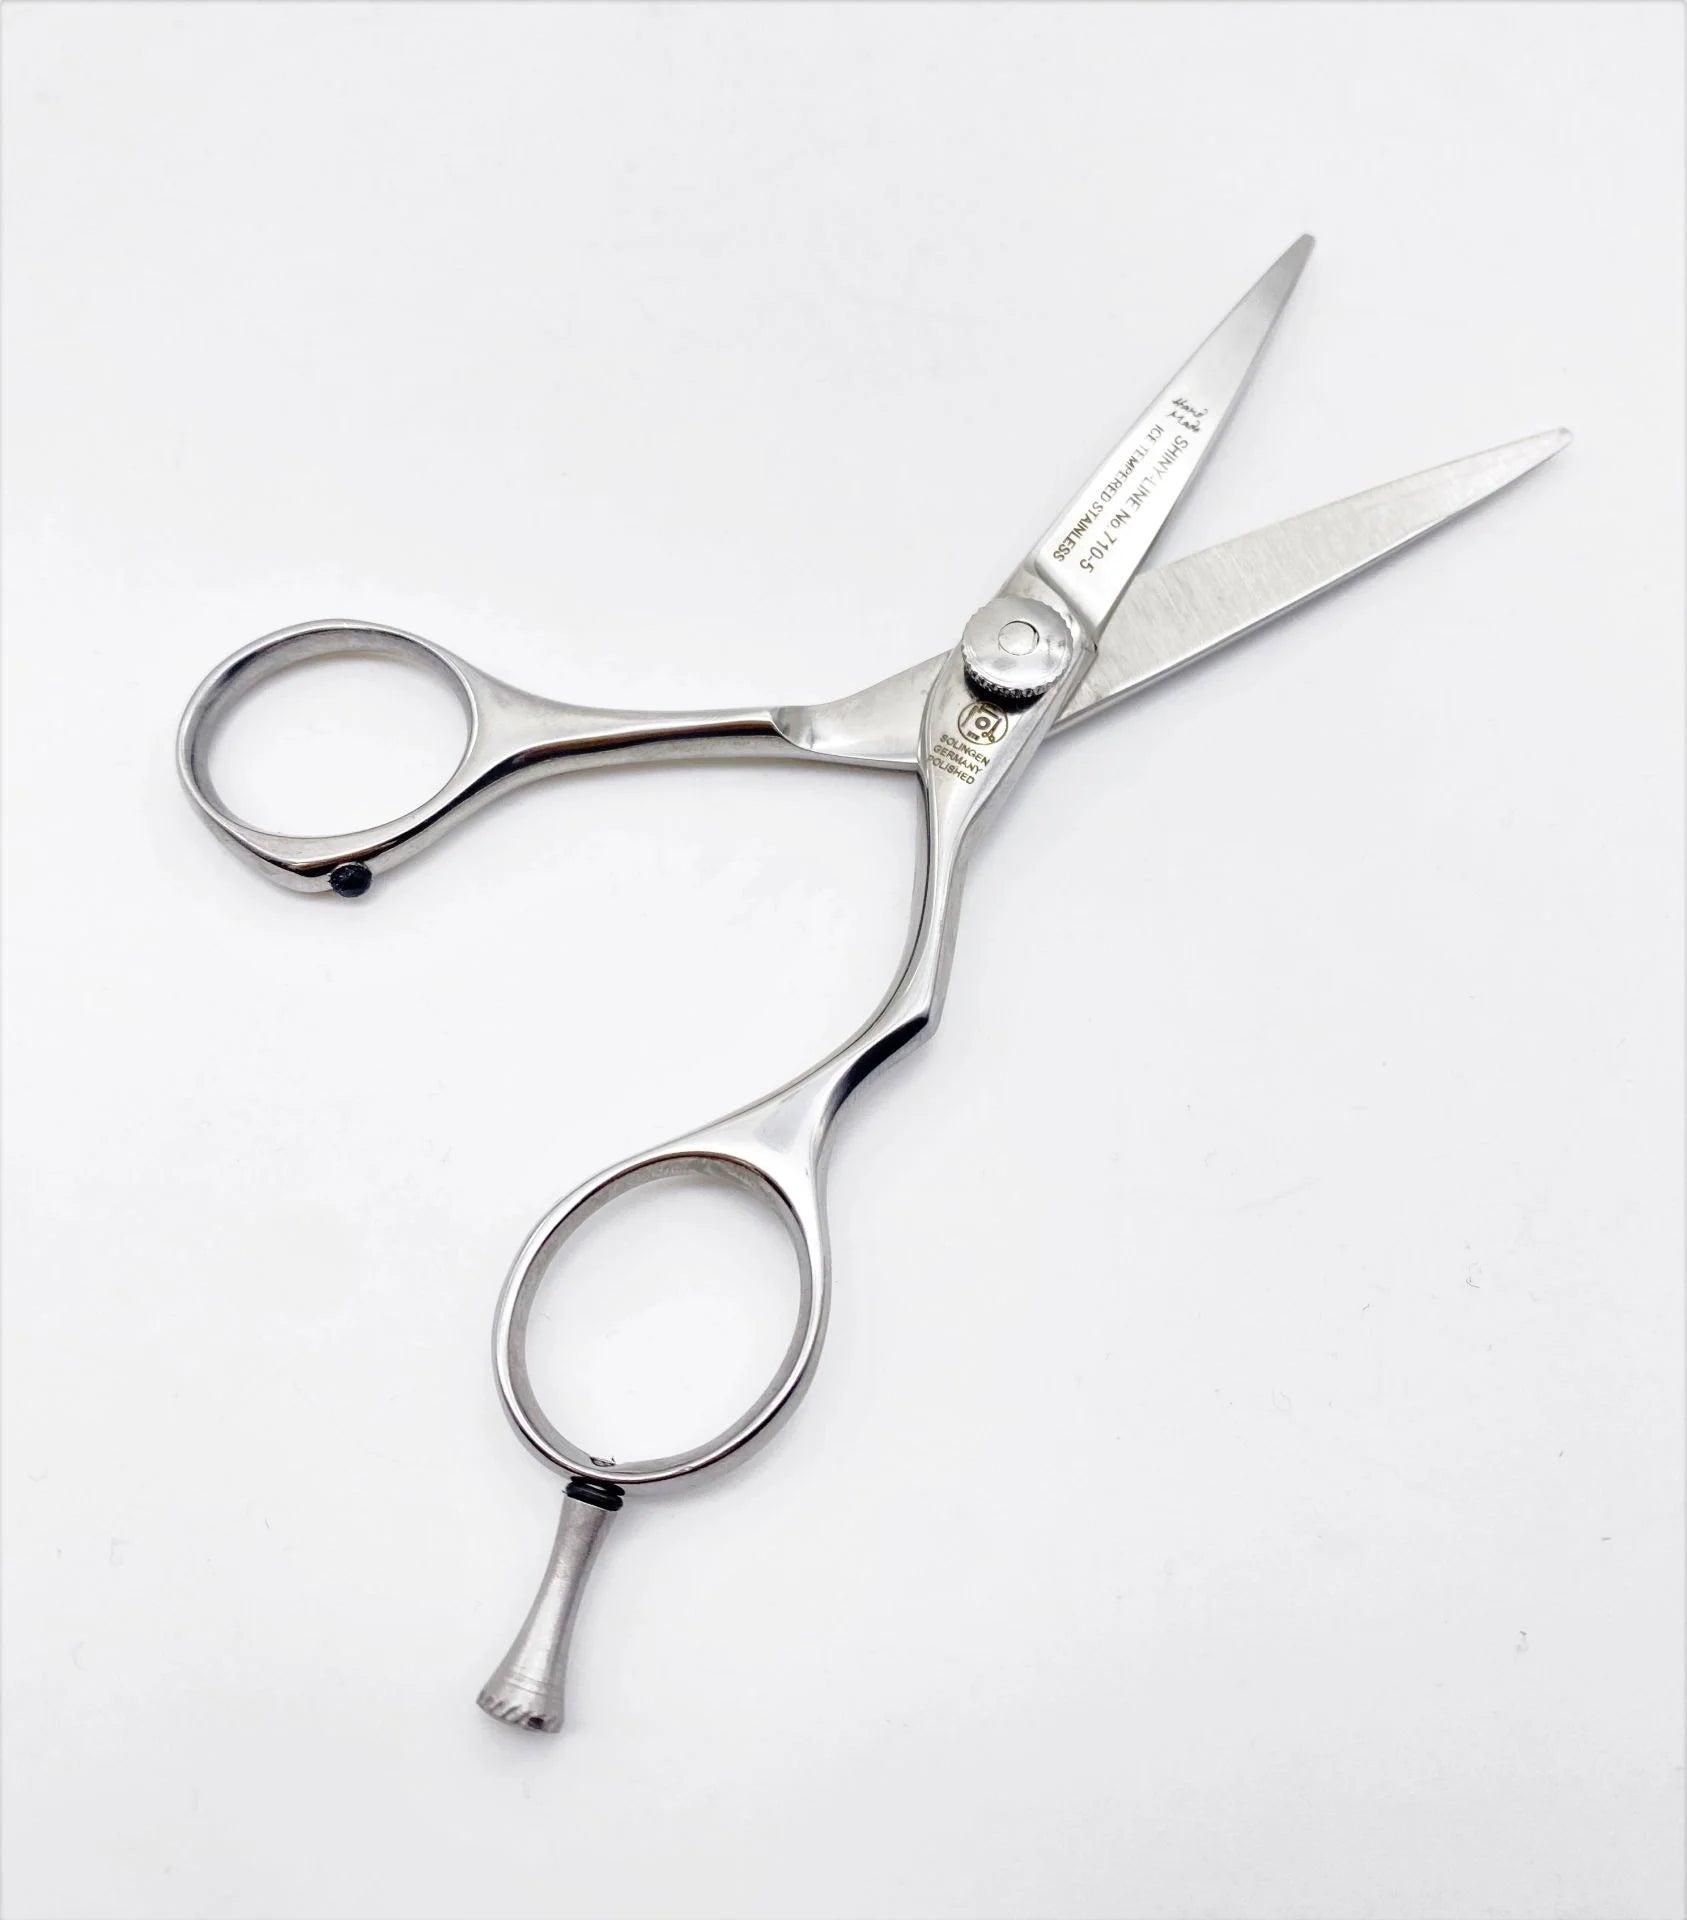 Hairdressing scissors Ergo Shiny Line polished, total length 12.7 cm